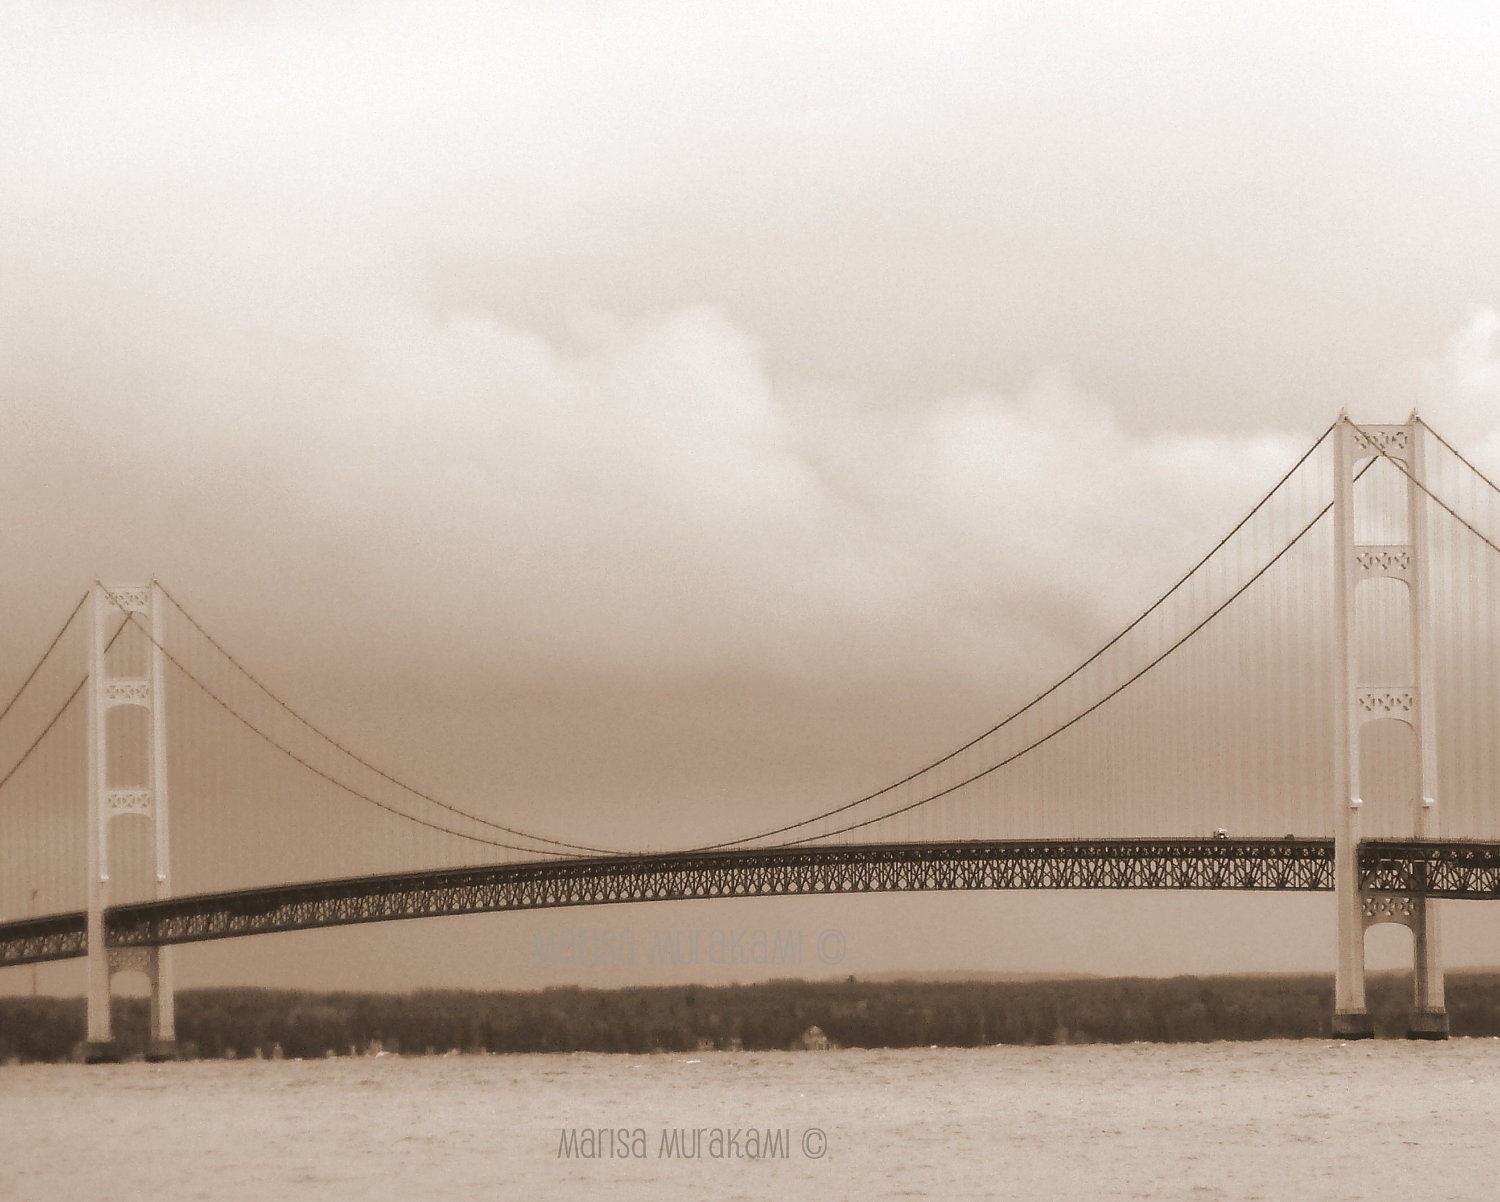 Dream like / Mackinac Bridge / Michigan / Upper Peninsula / Architecture / Landmark - sukoshishop